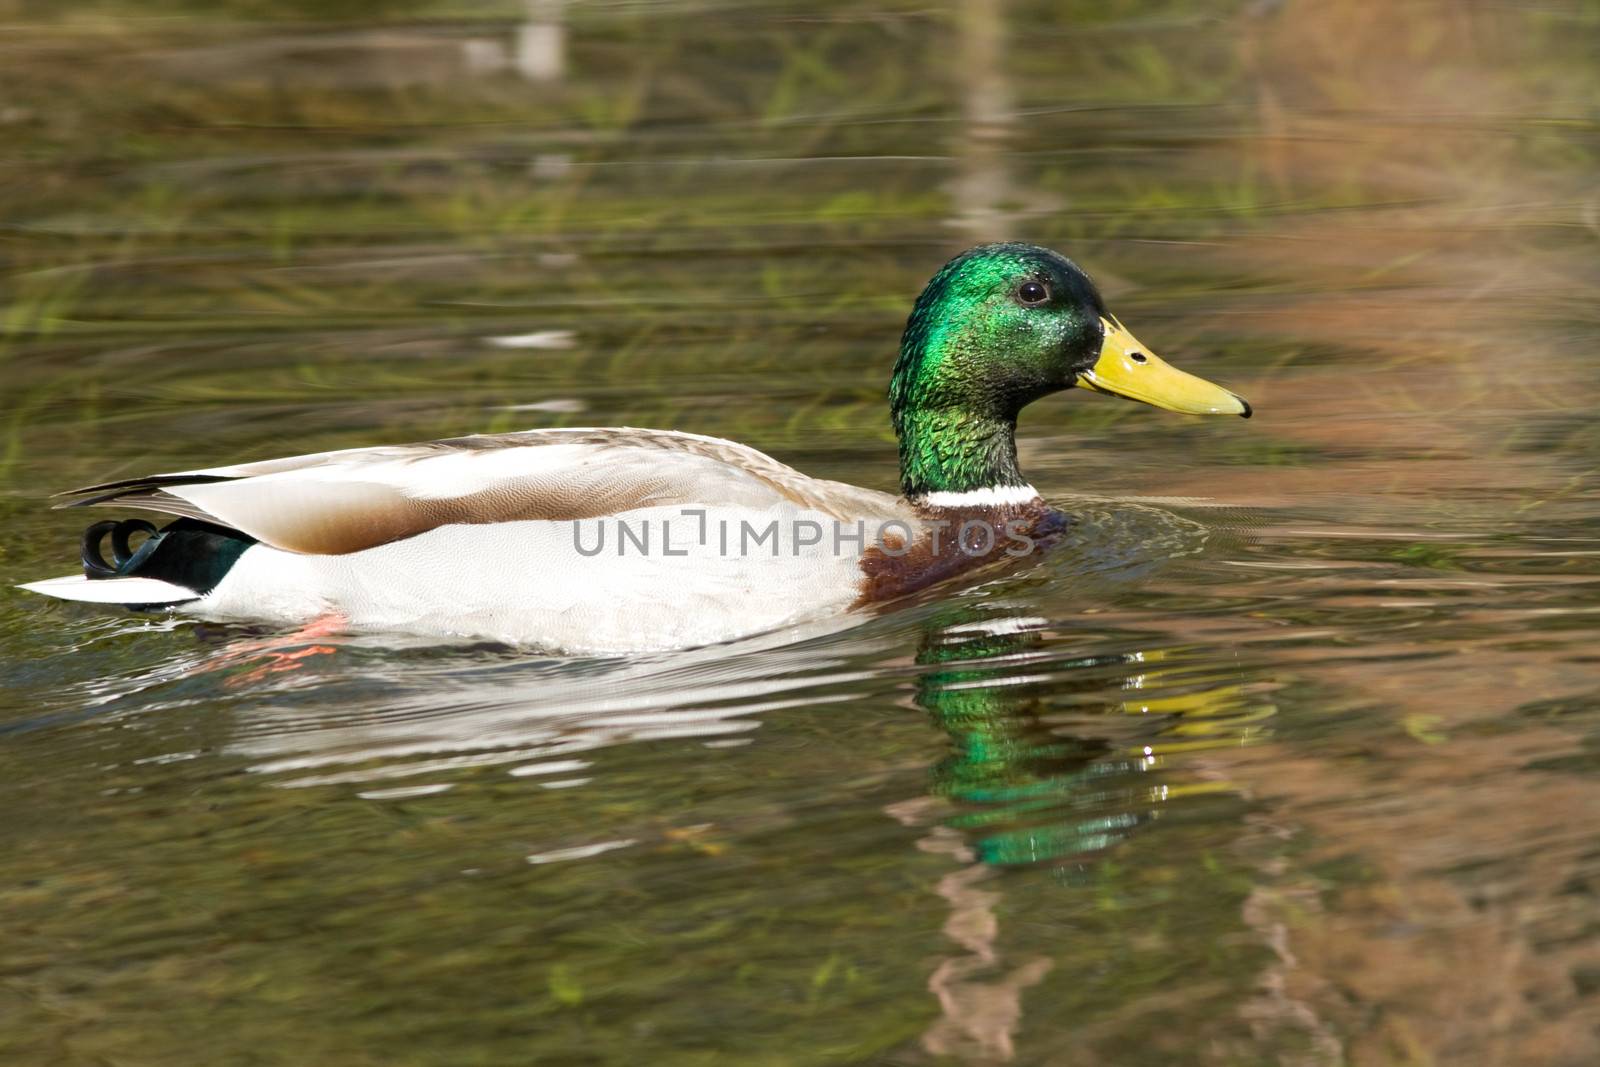 Duck in a lake by CelsoDiniz